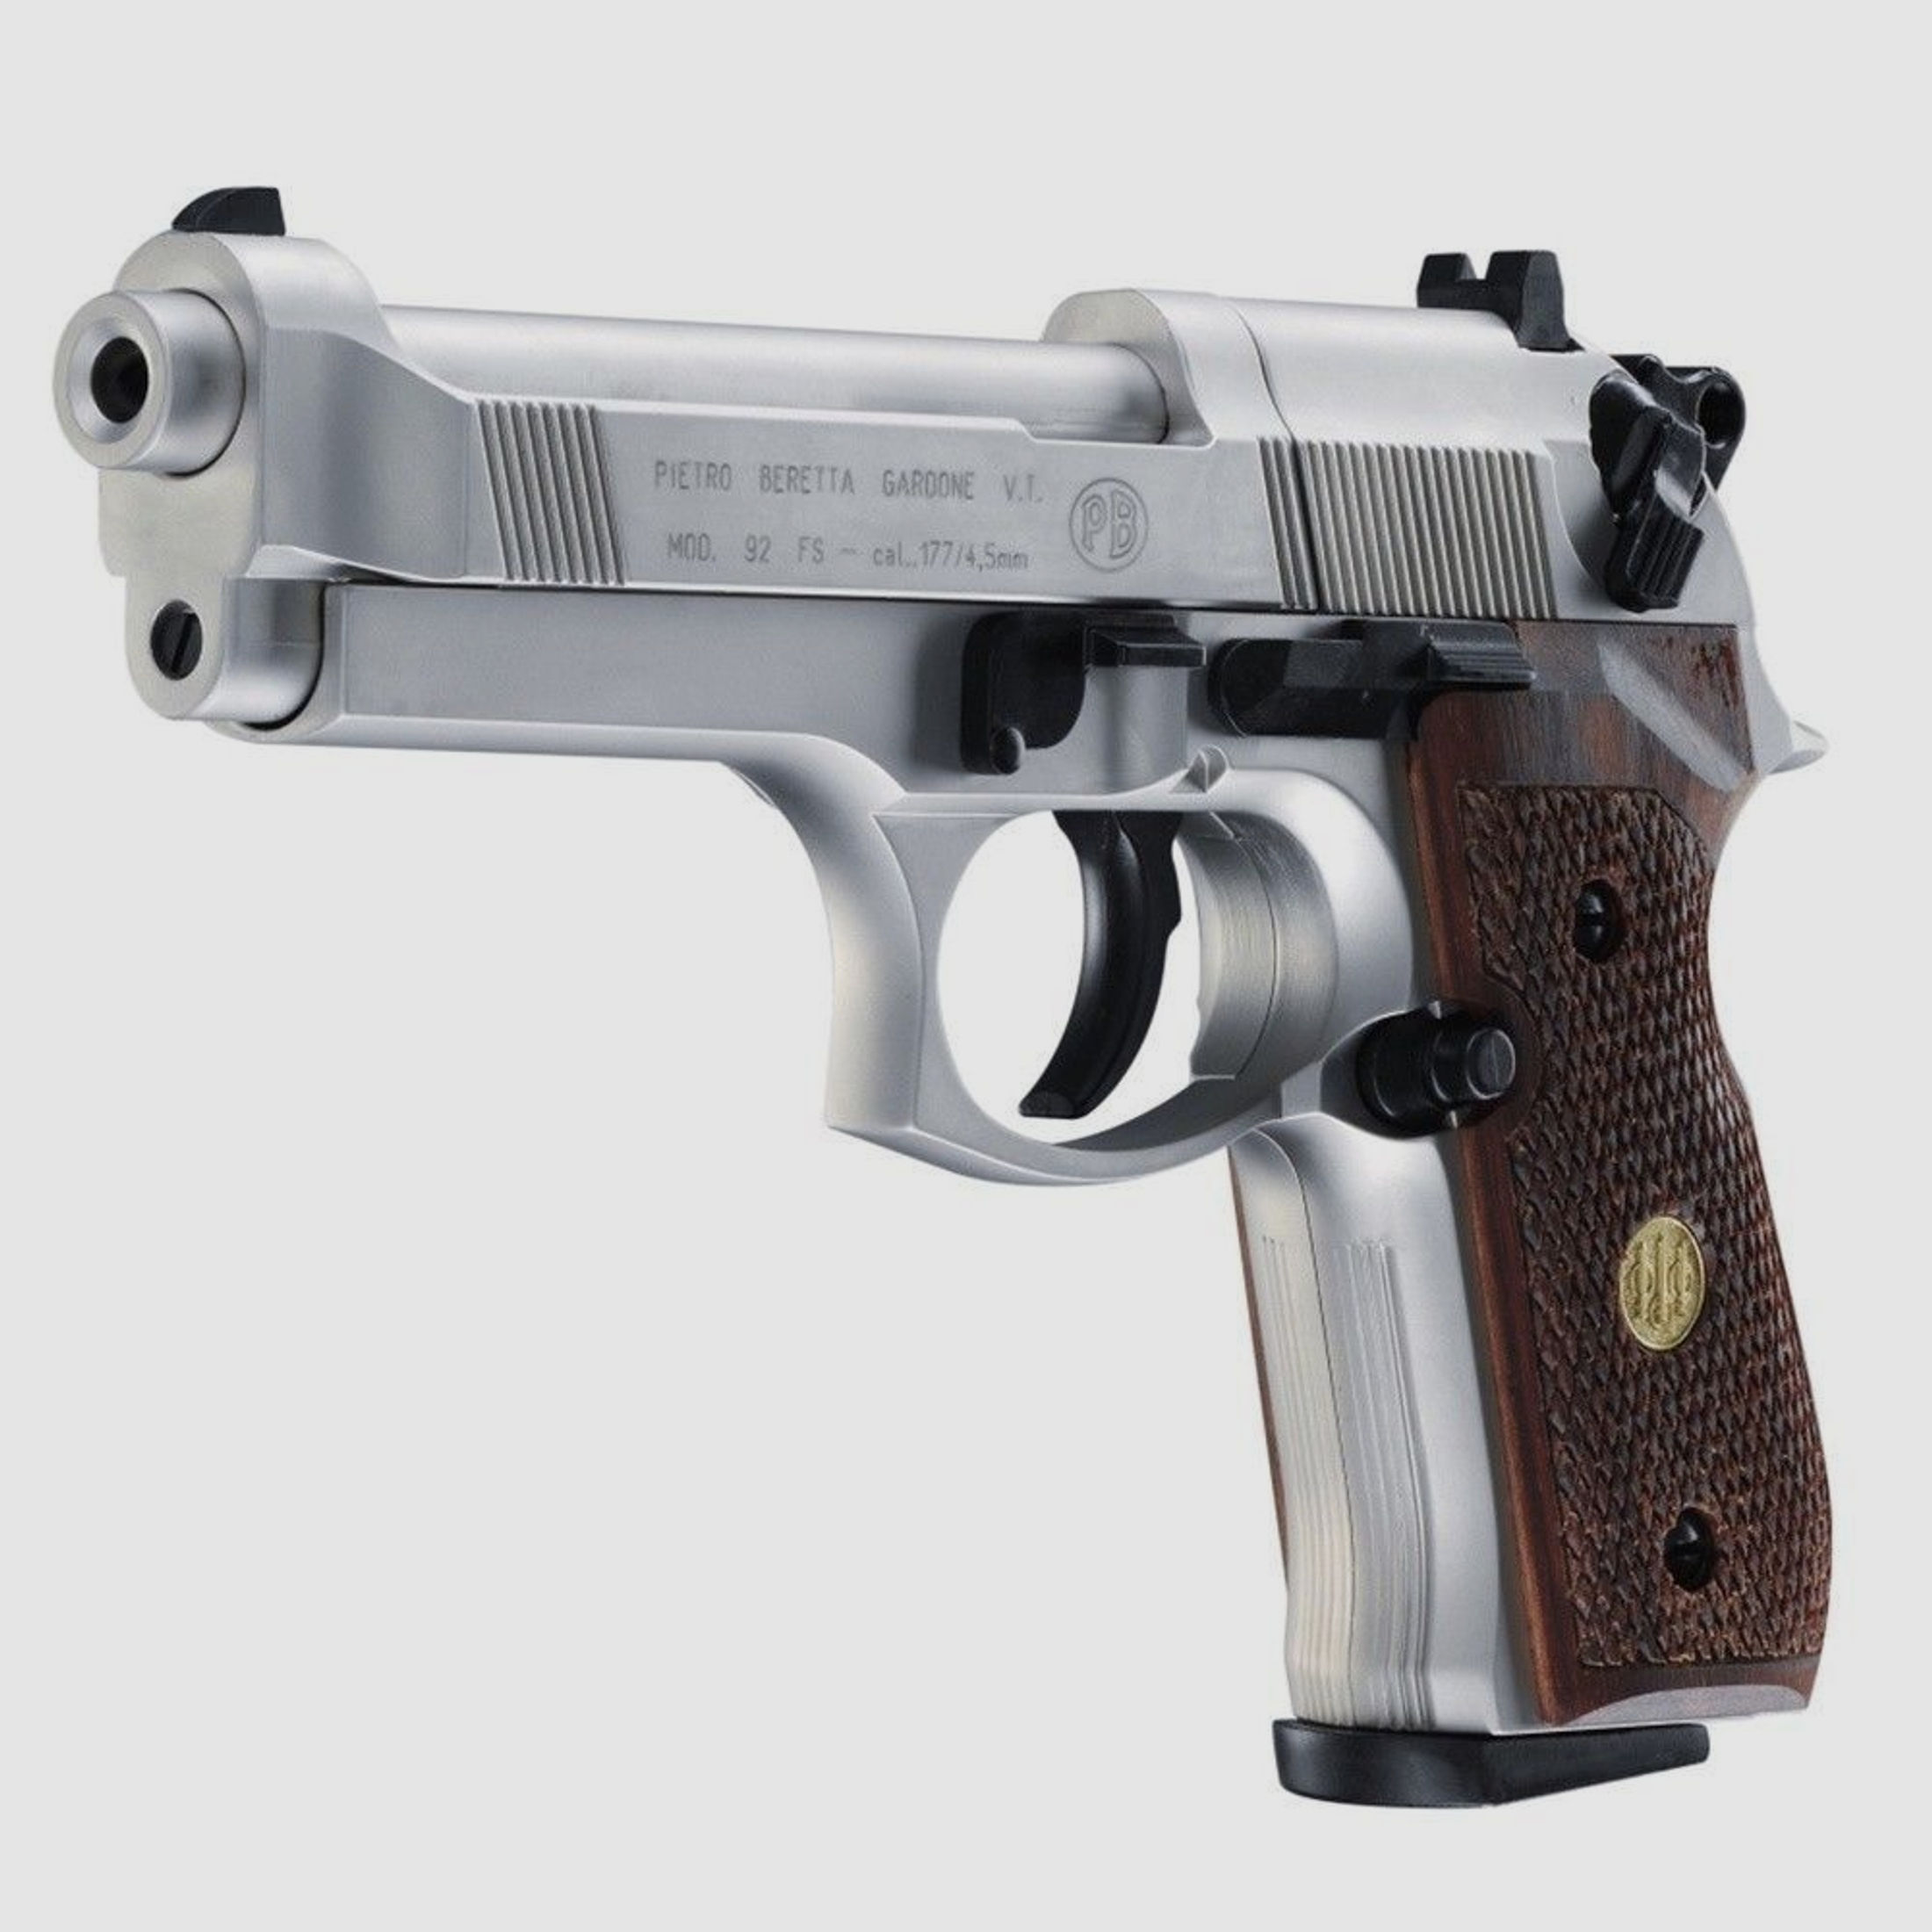 Beretta M 92 FS CO2-Pistole Kaliber 4,5mm - Komplett-SET